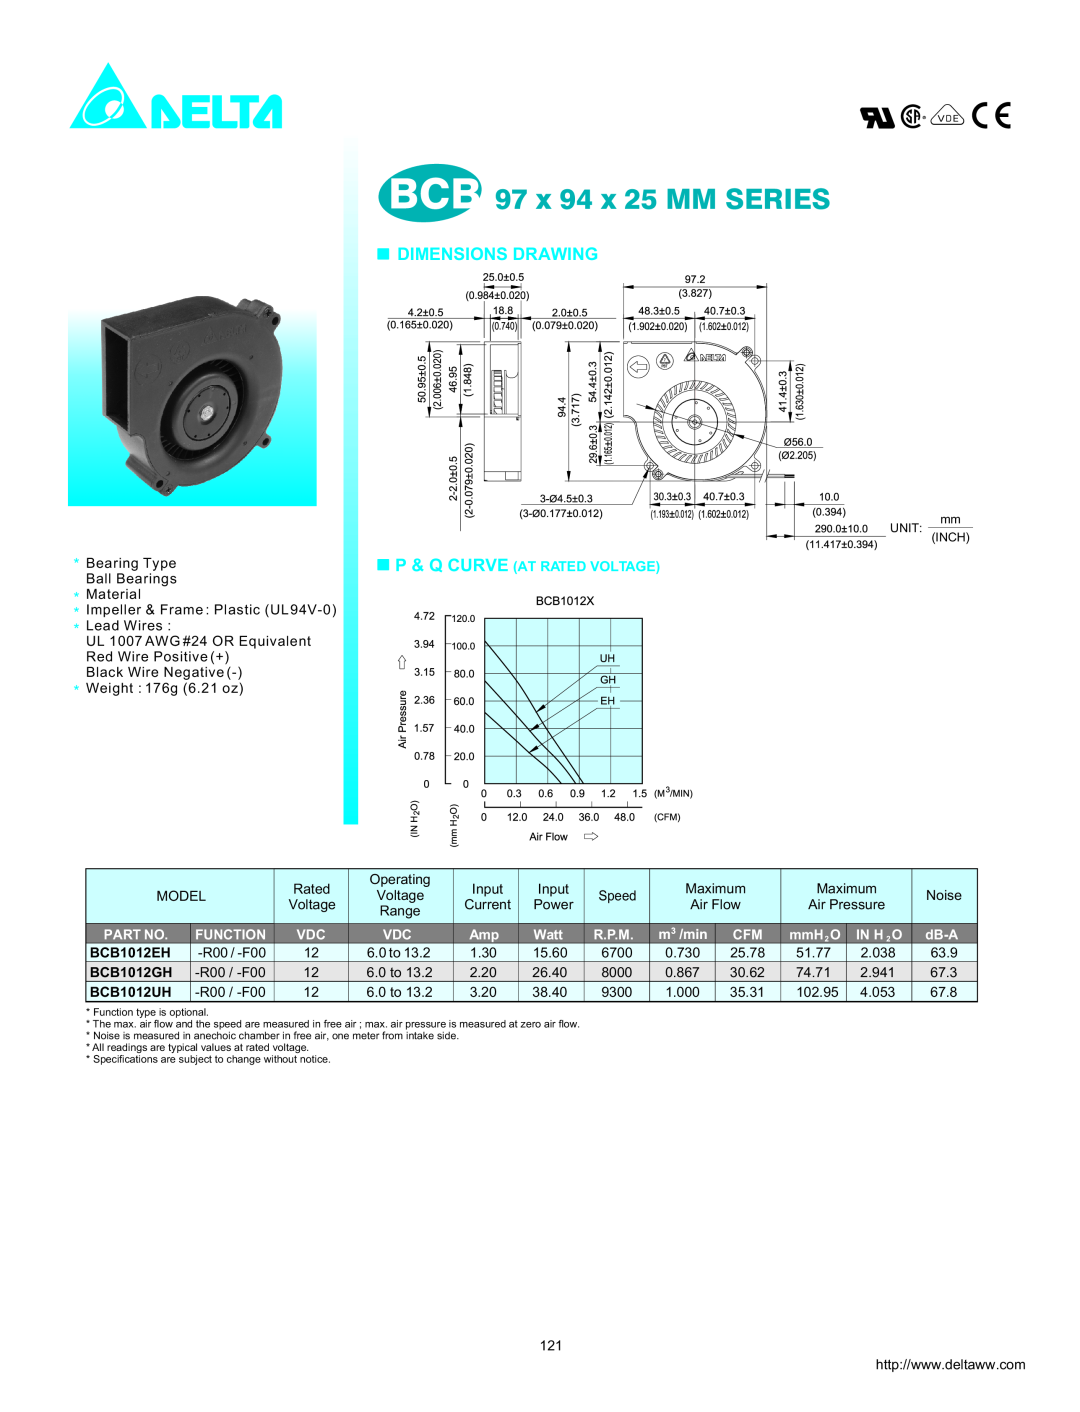 Delta Electronics BCB1012UH dimensions BCB 97 x 94 x 25 MM SERIES, Dimensions Drawing, P & Q Curve At Rated Voltage, Watt 